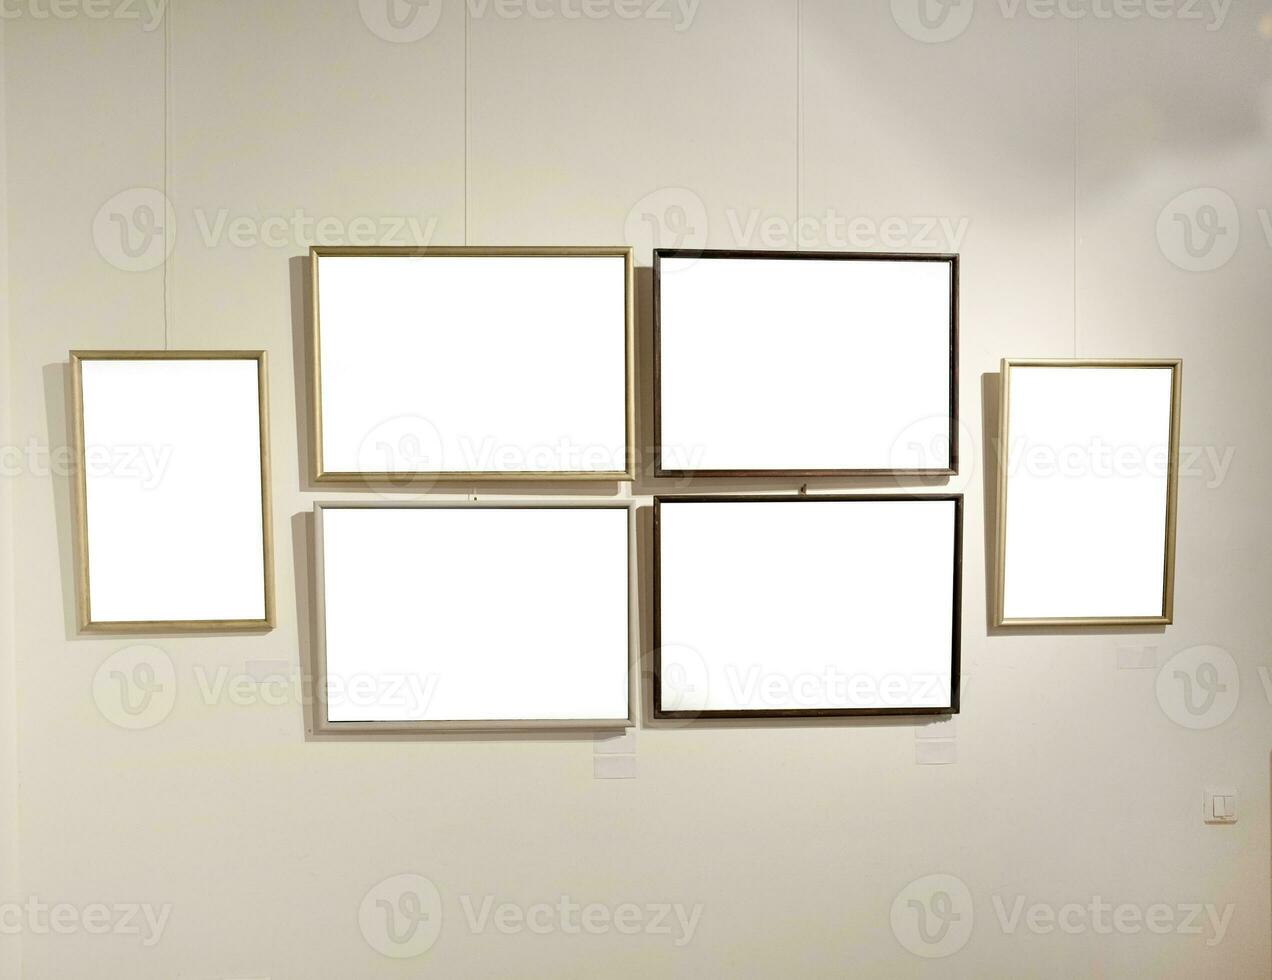 leer Bild Frames auf grau Mauer mit glühend Lampe, spotten oben foto